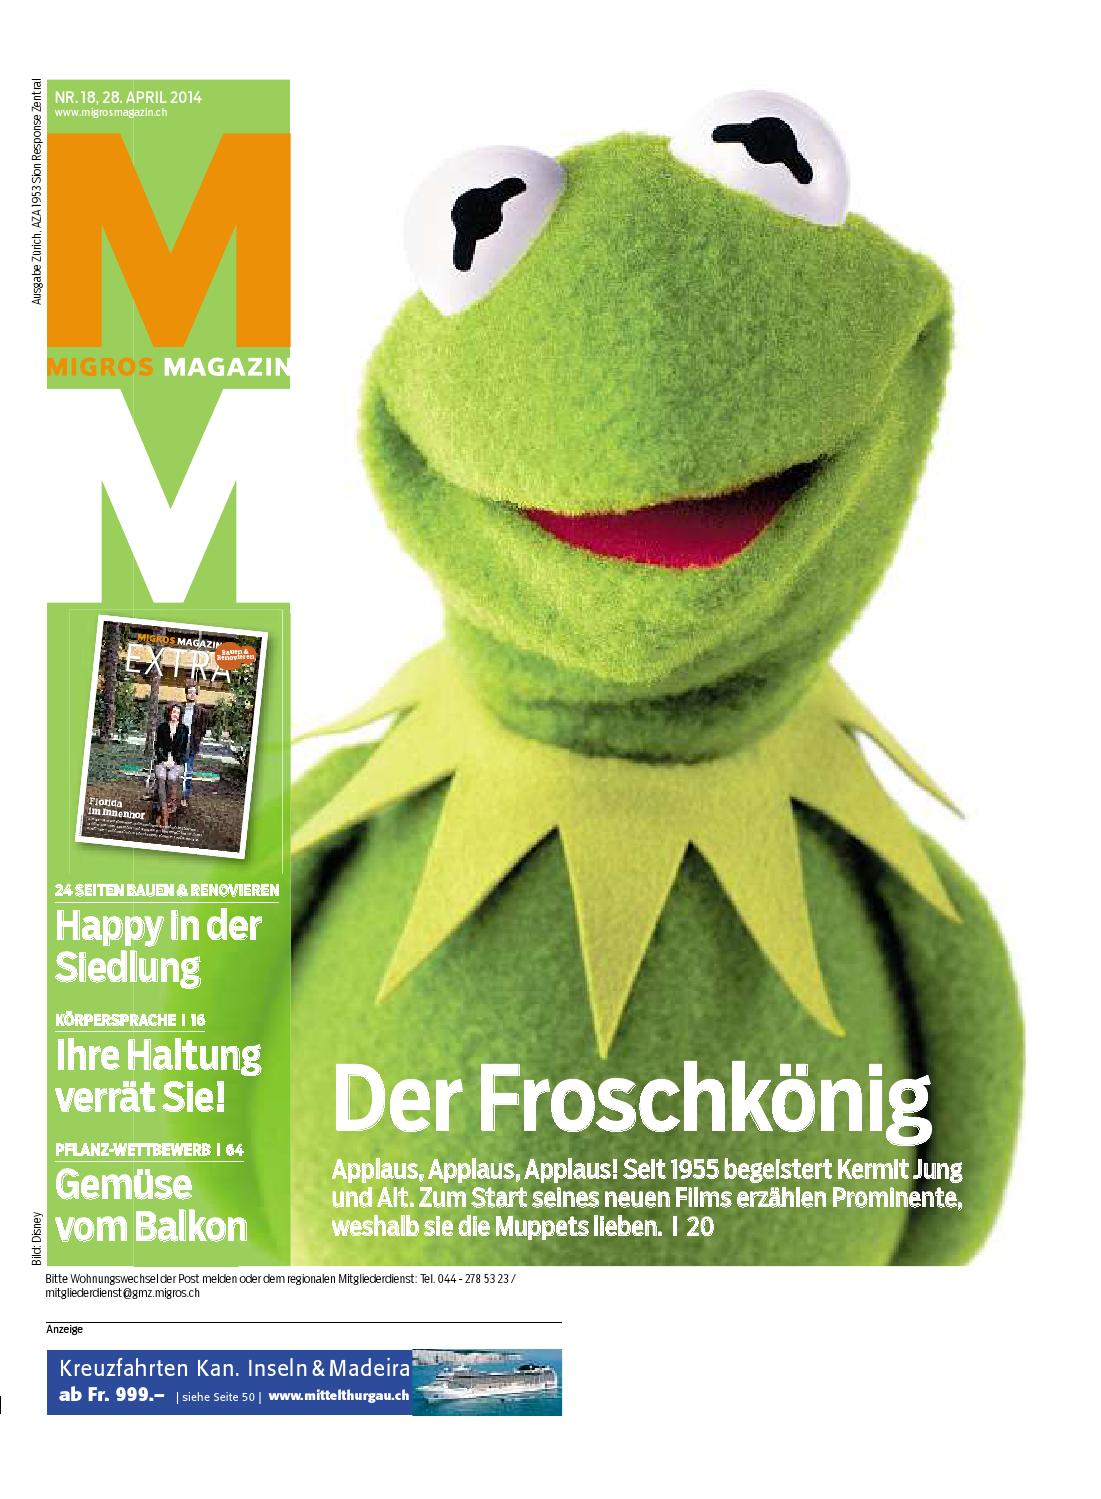 Rattenloch Im Garten Frisch Migros Magazin 18 2014 D Zh by Migros Genossenschafts Bund